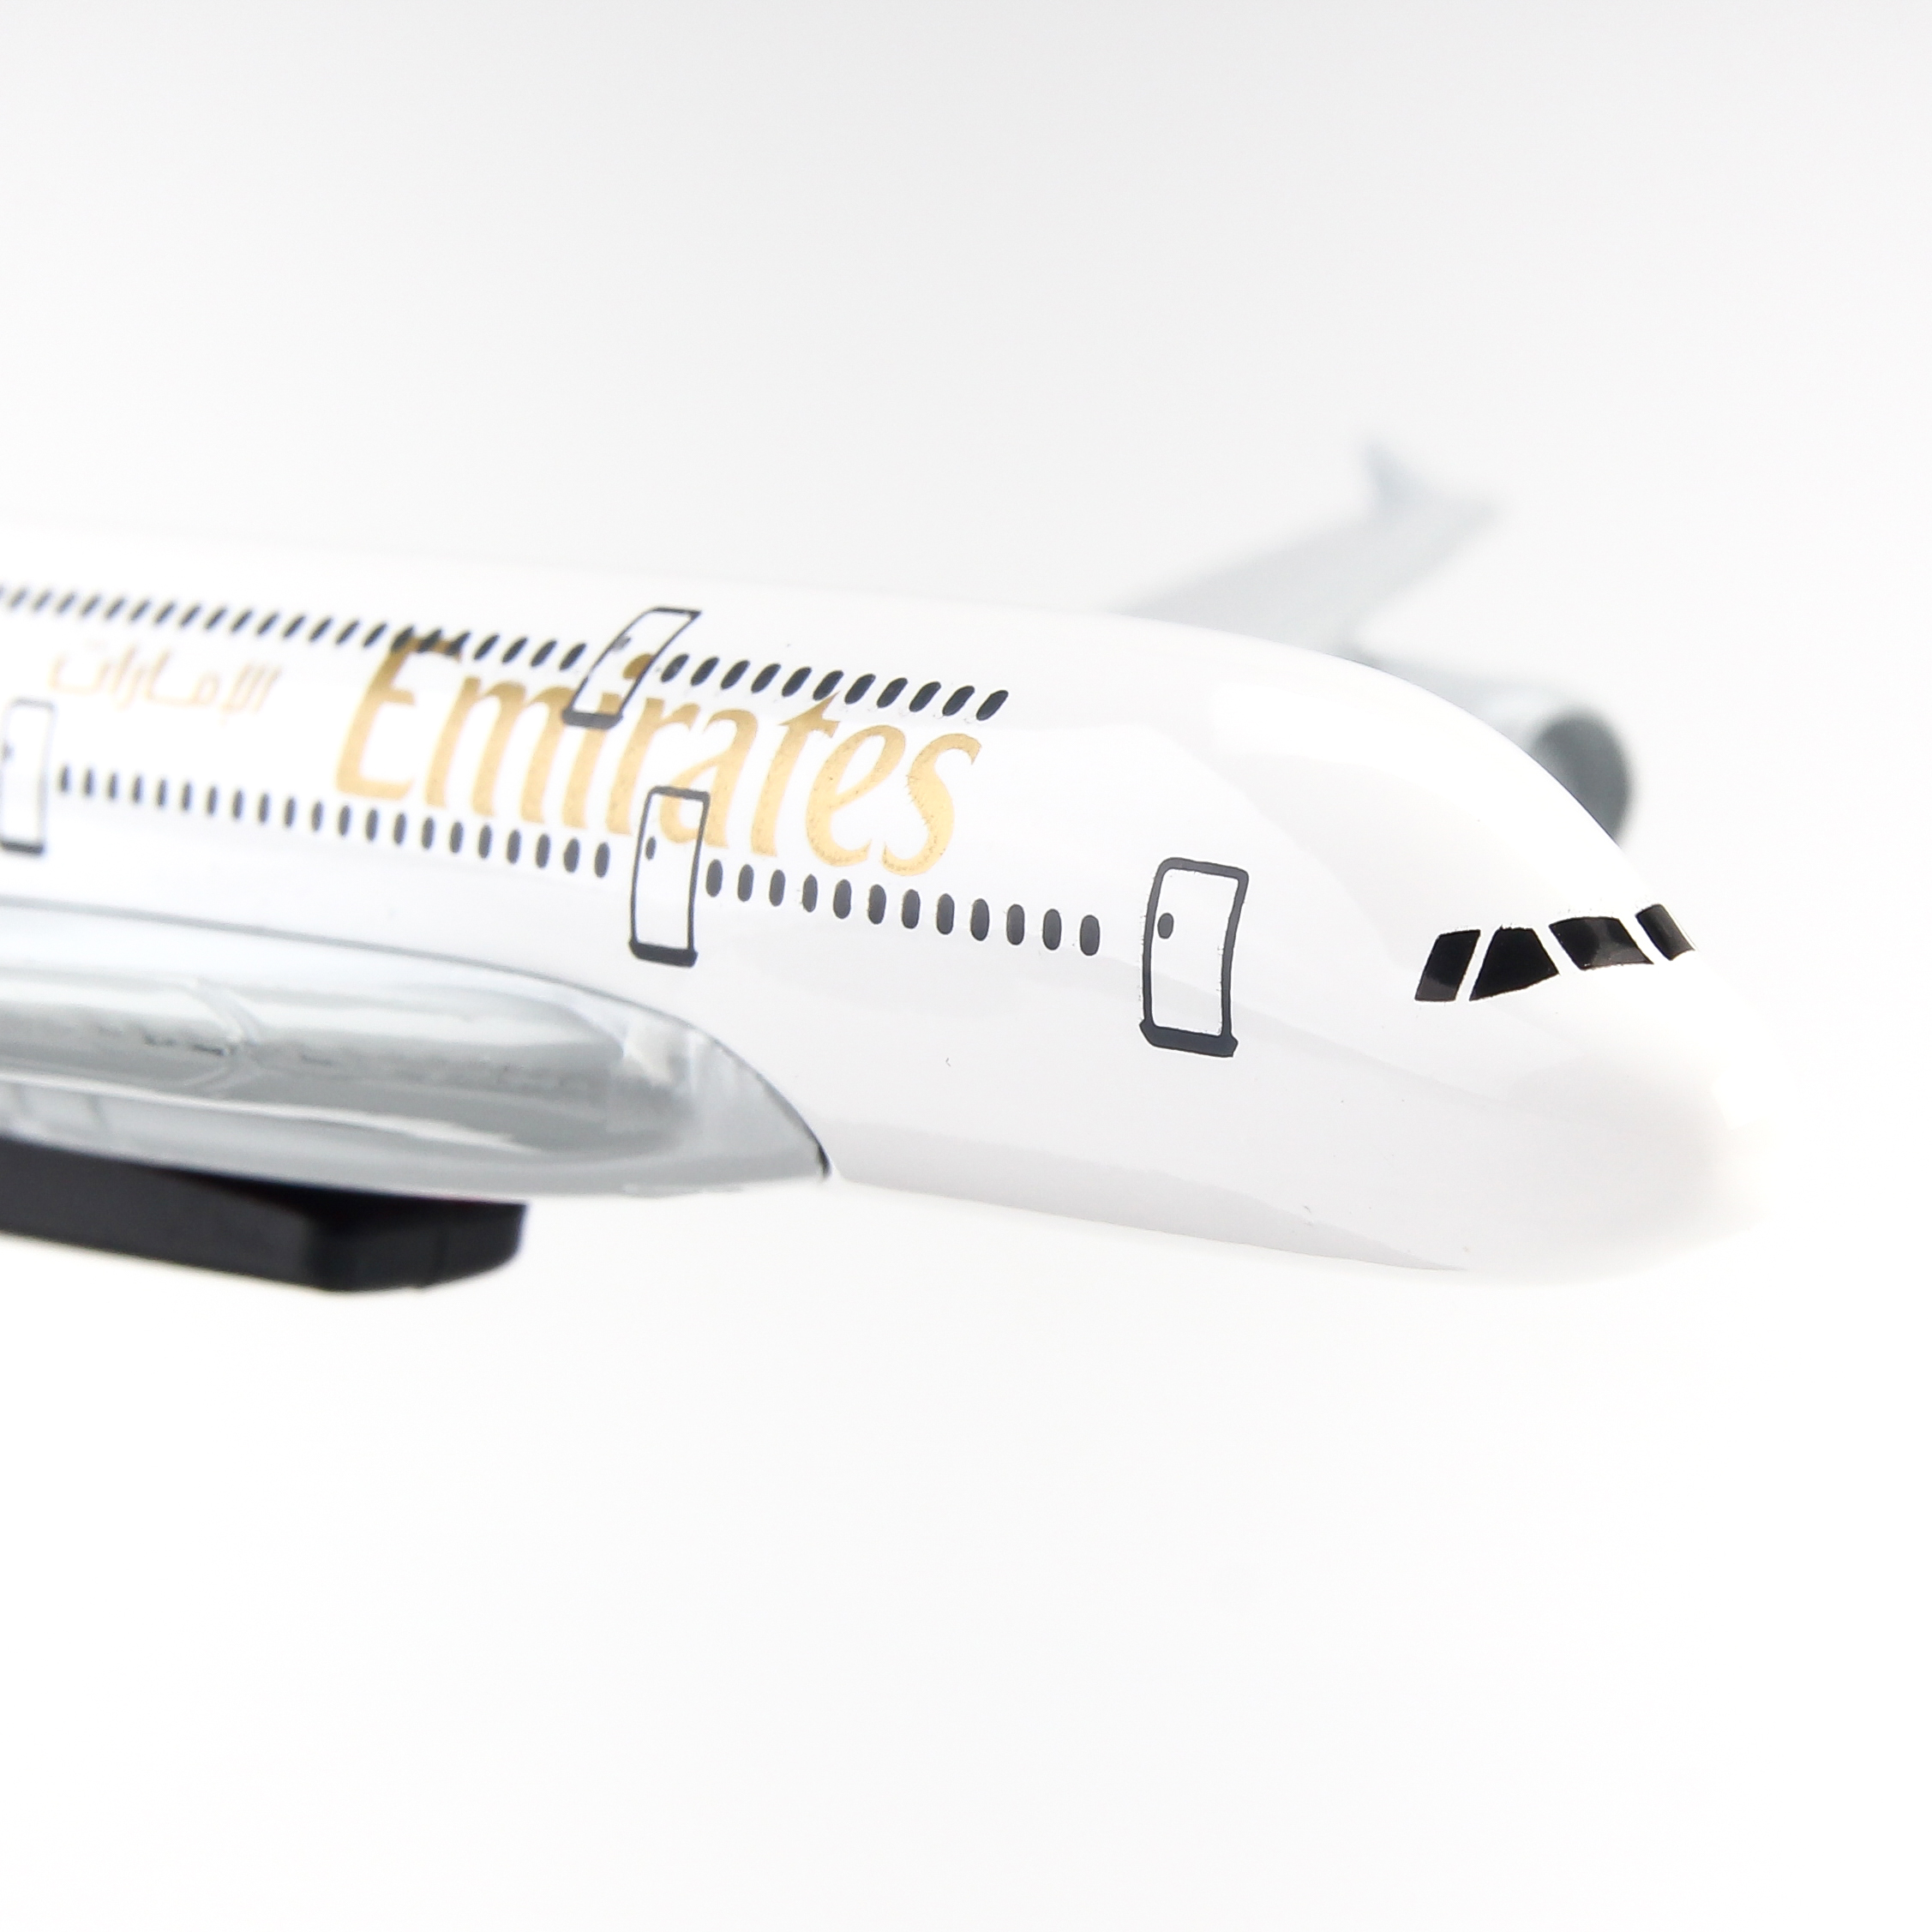 Mô hình máy bay A380 Emirates Airlines (16cm) ( Trắng,Xanh lá,Đen,Đỏ )